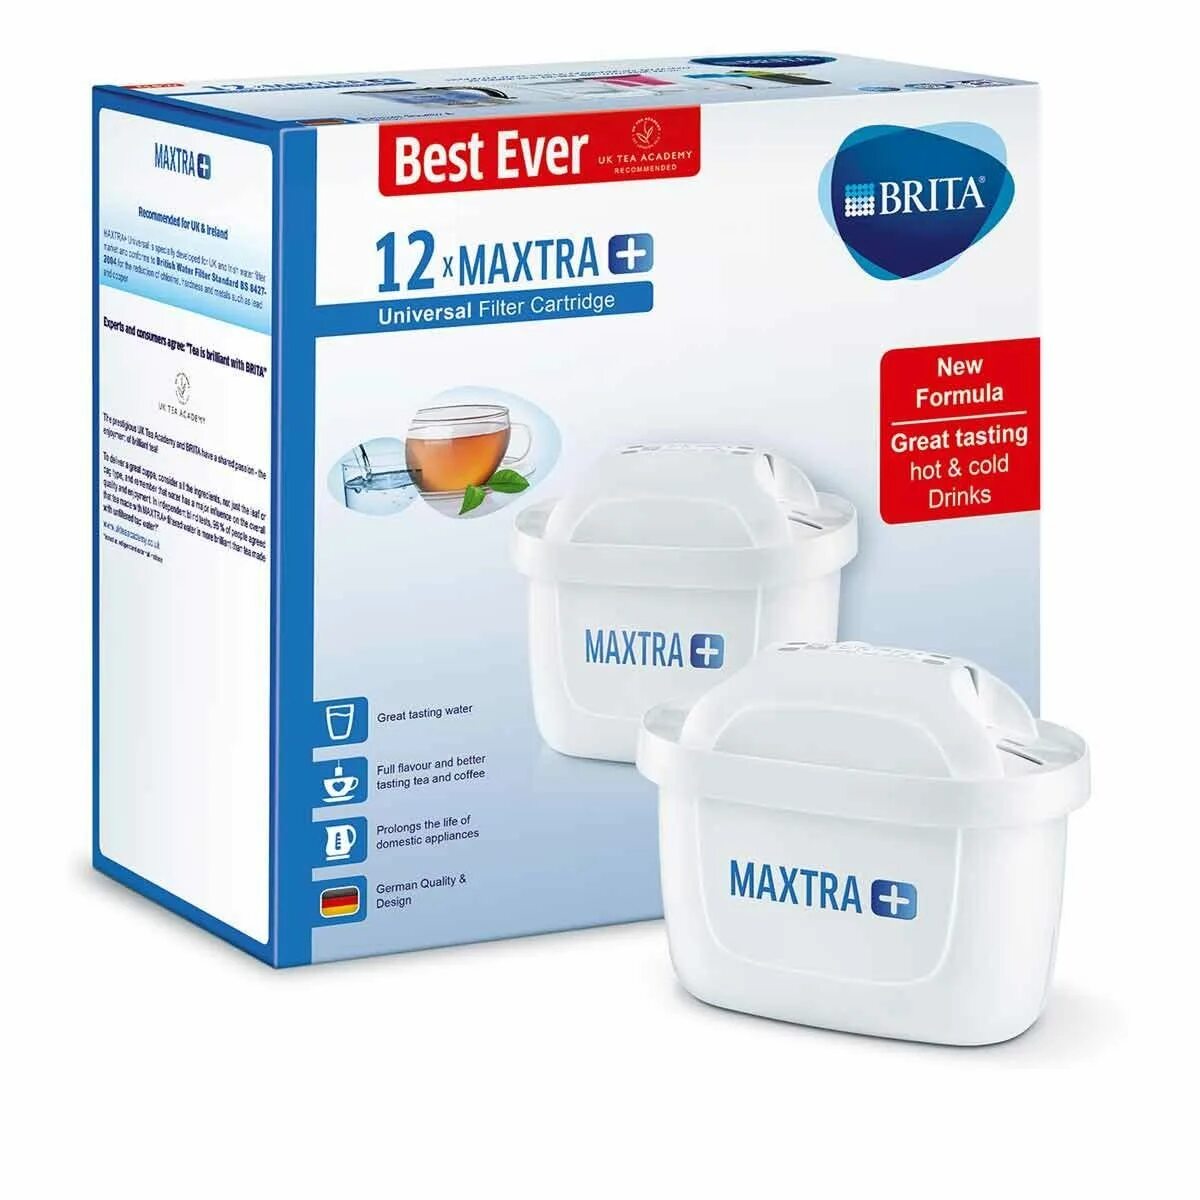 Brita Maxtra картридж Pack 1. Фильтр Brita Maxtra. Brita Maxtra Plus. Картриджи для фильтров очистки воды Brita Maxtra hardness.